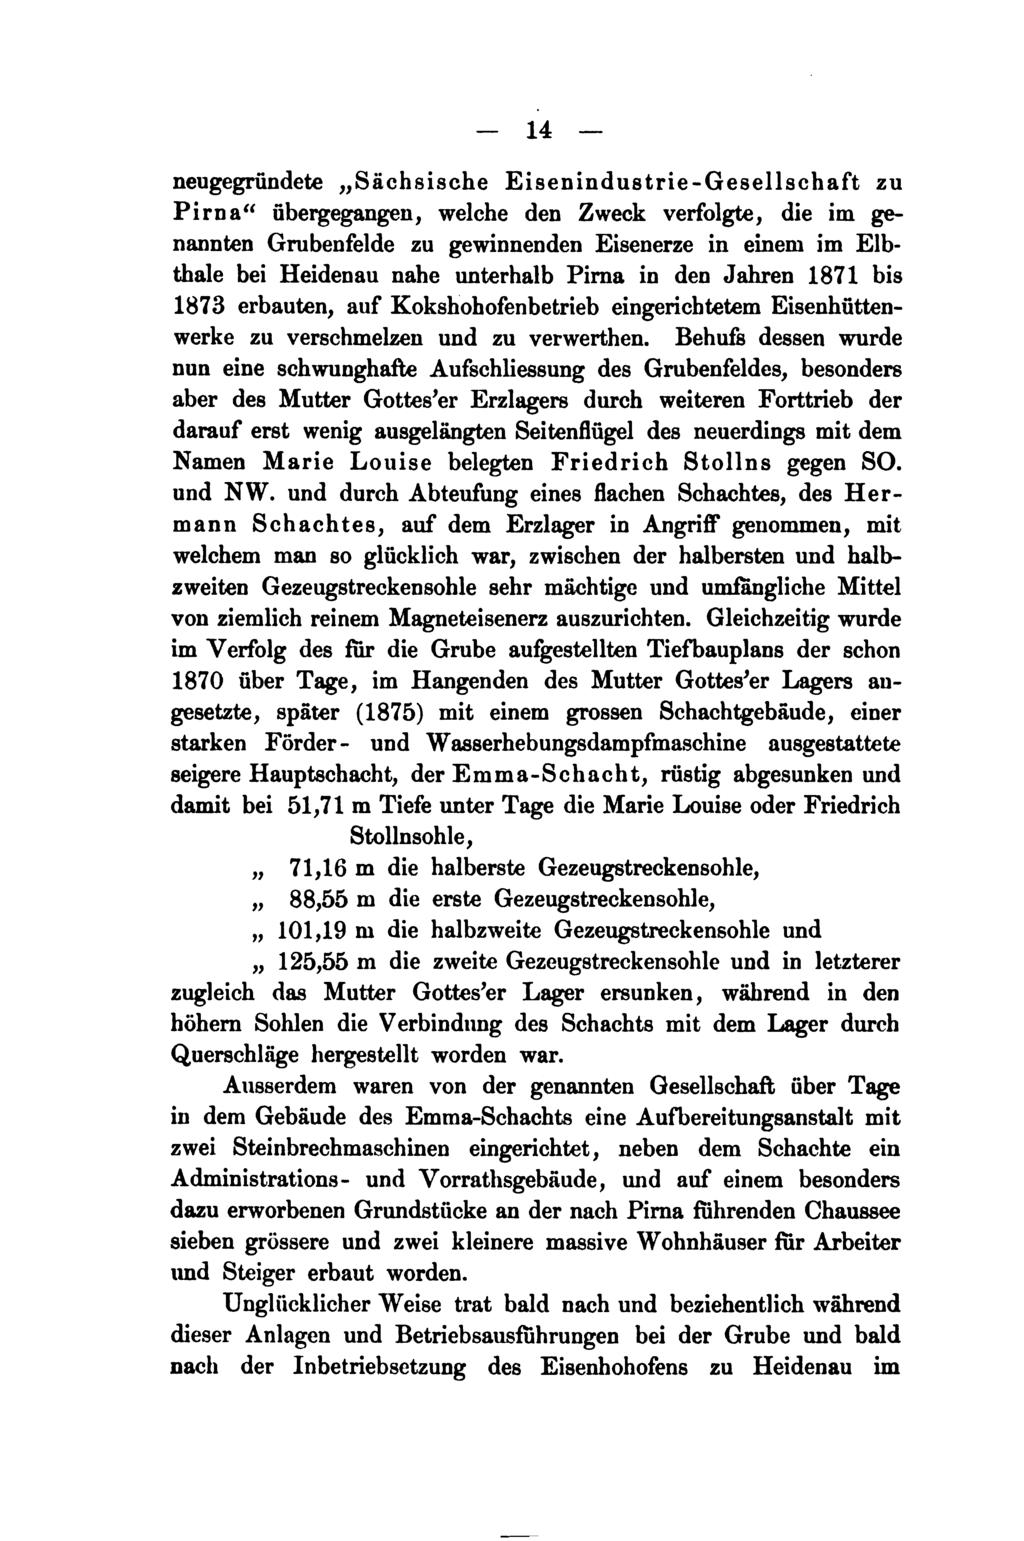 14 neugegründete "Sächsische Eisenindustrie-Gesellschaft zu Pirna" übergegangen, welche den Zweck verfolgte, die im genannten Grubenfelde zu gewinnenden Eisenerze in einem im Elbthale bei Heidenau